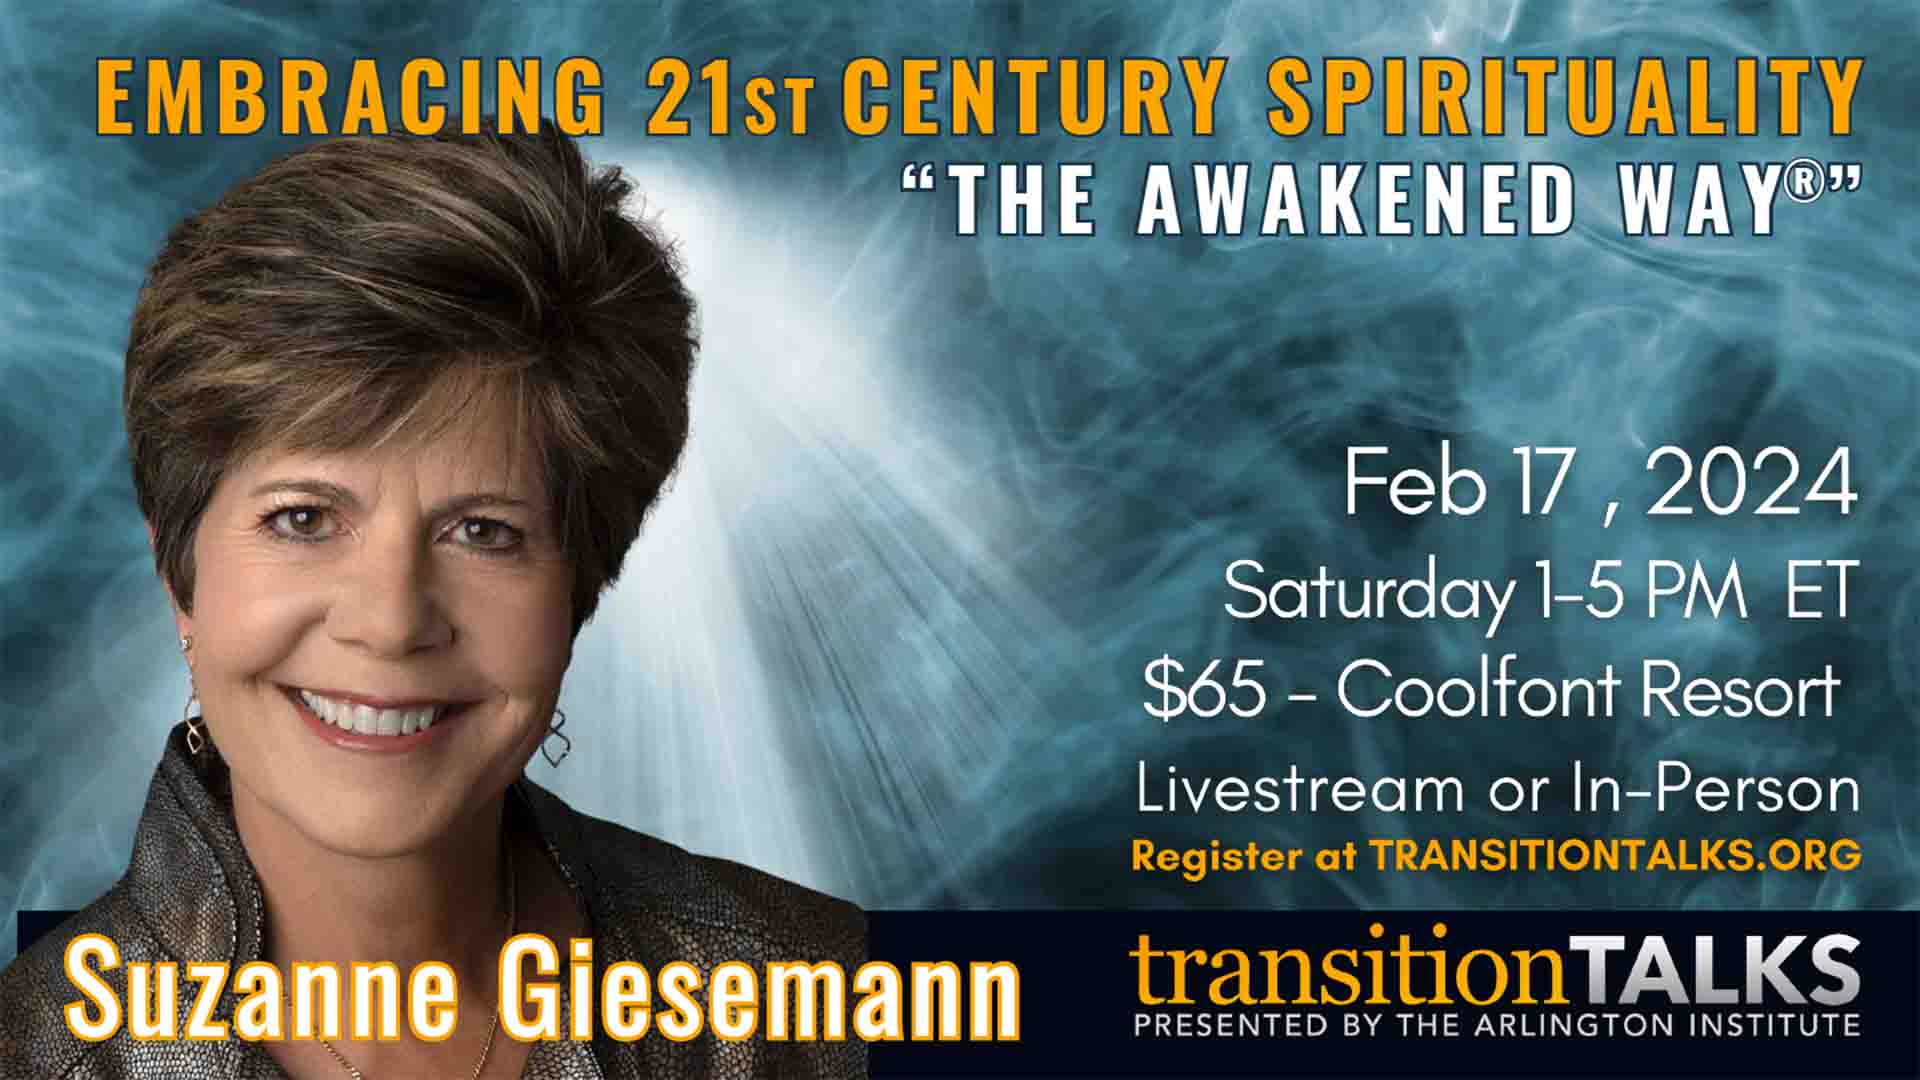 Suzanne Giesemann, TransitionTalks